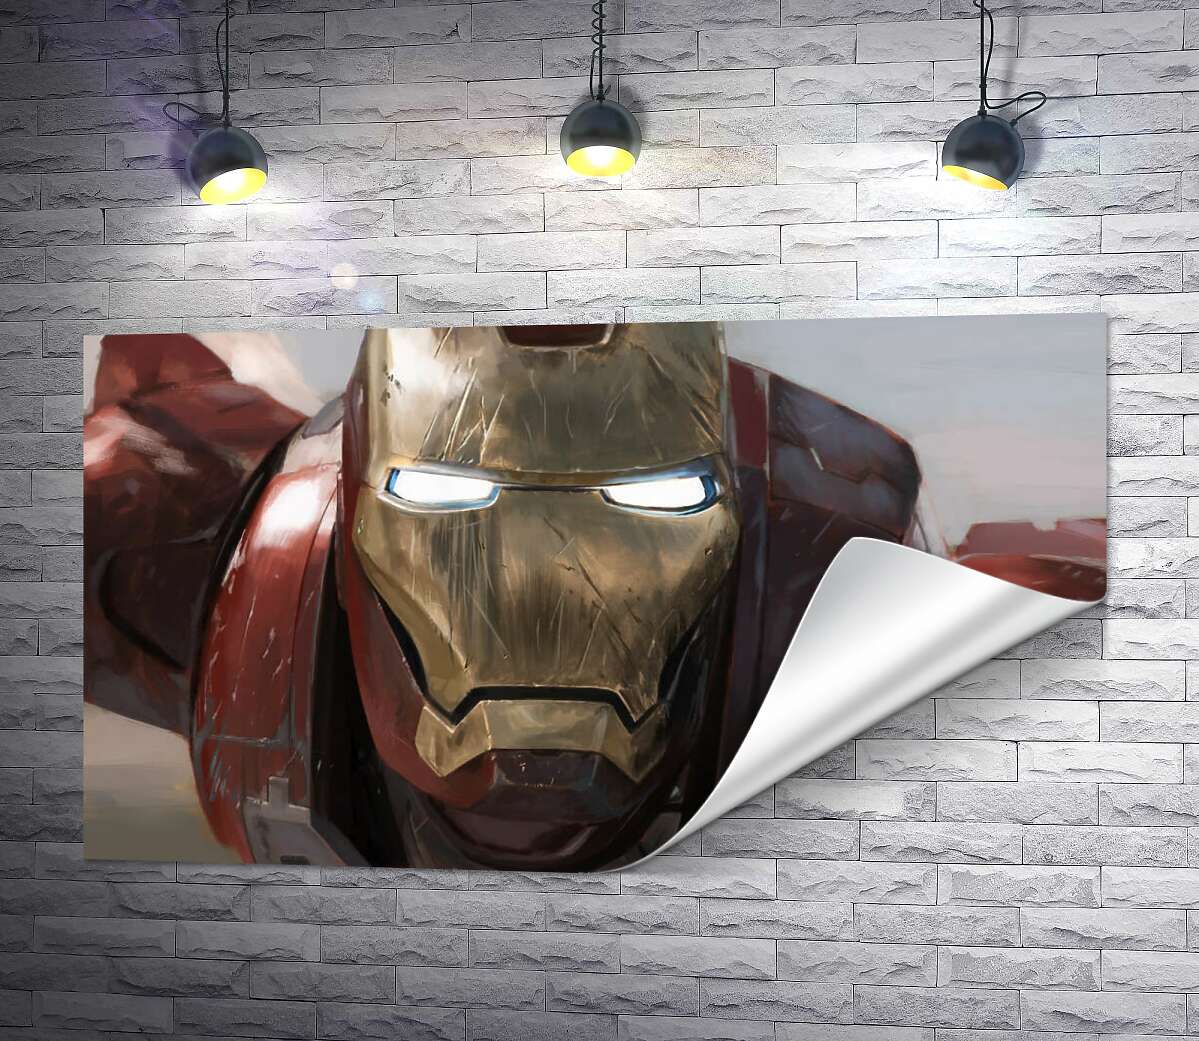 друк Брутальне обличчя Залізної людини (Iron man)